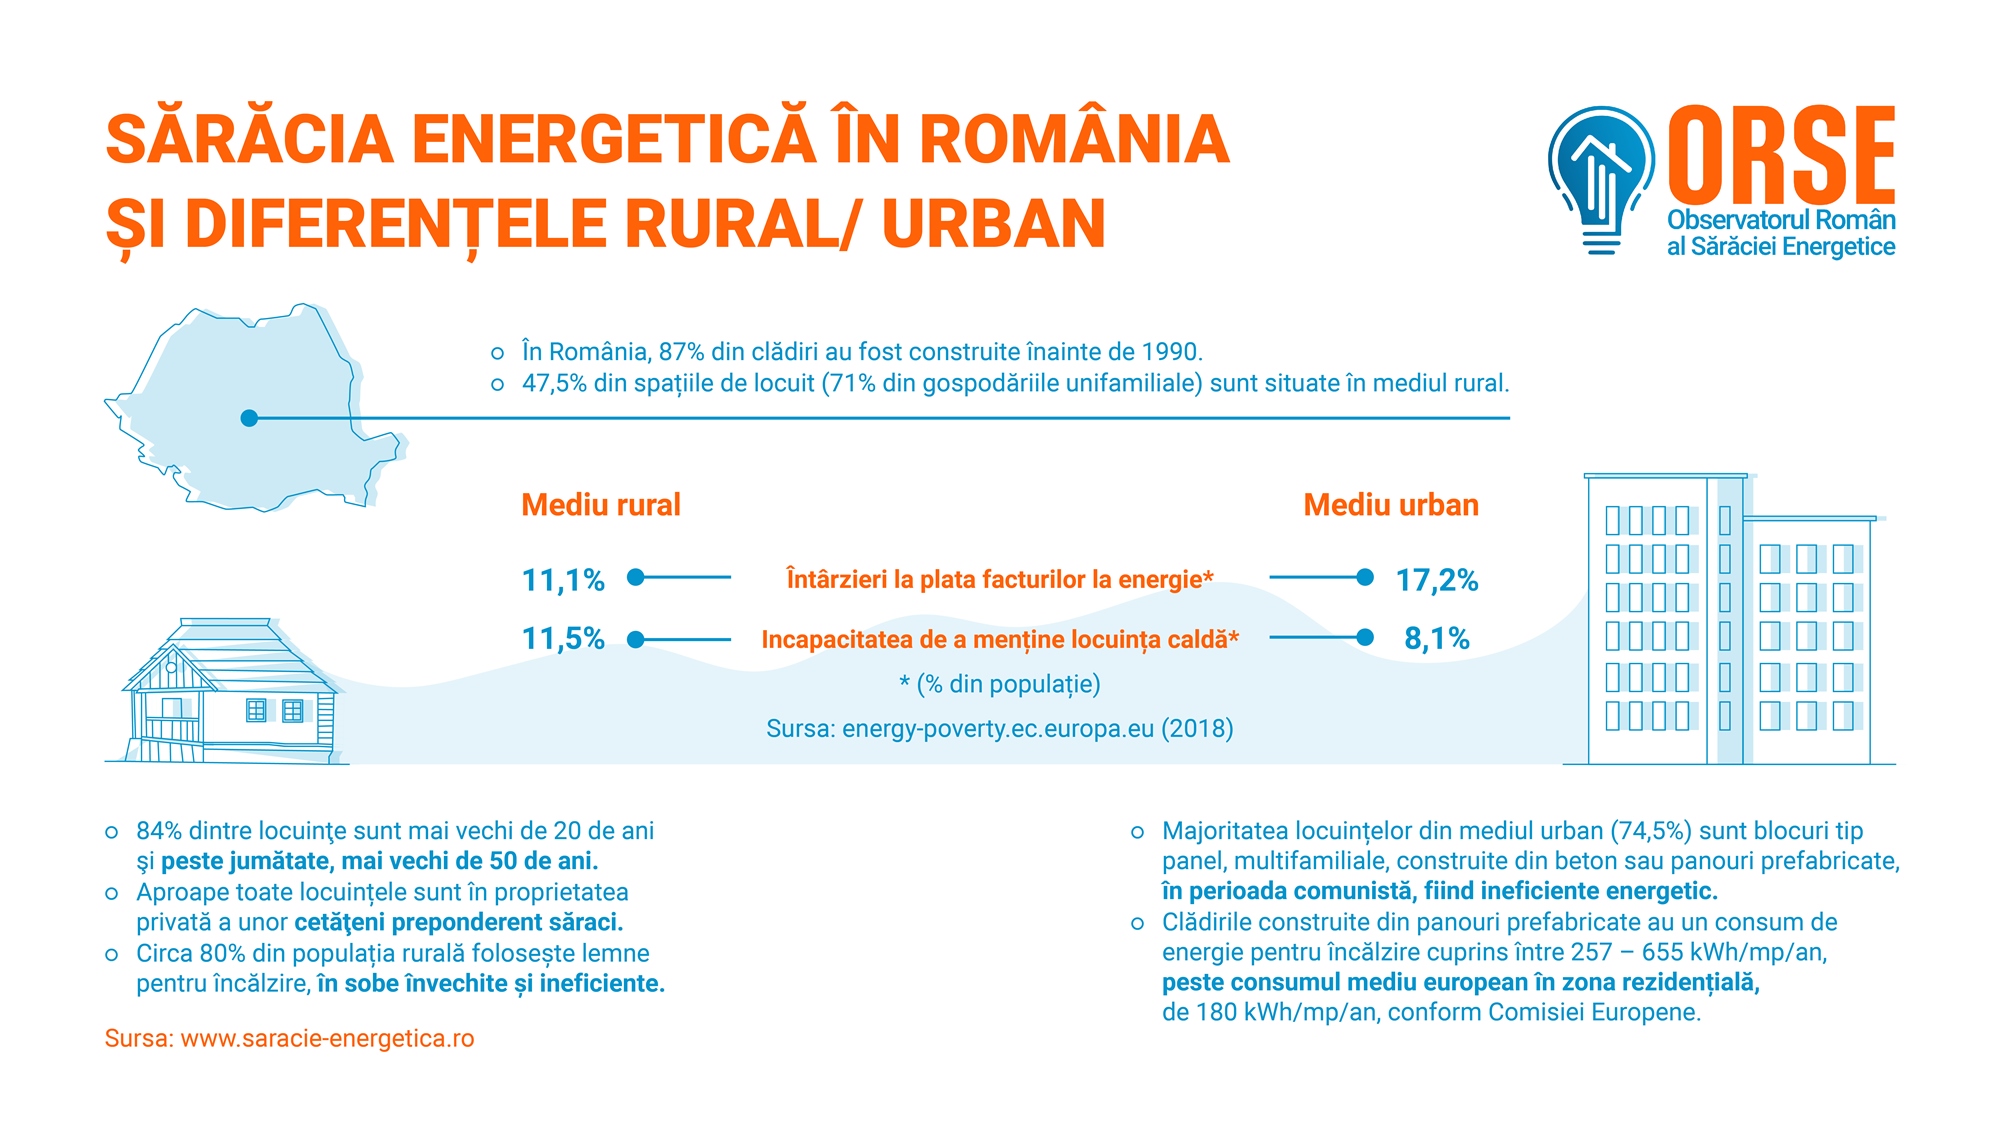 ORSE: Sărăcia energetică ia amploare în România și e nevoie de măsuri care să trateze cauzele, nu doar efectele